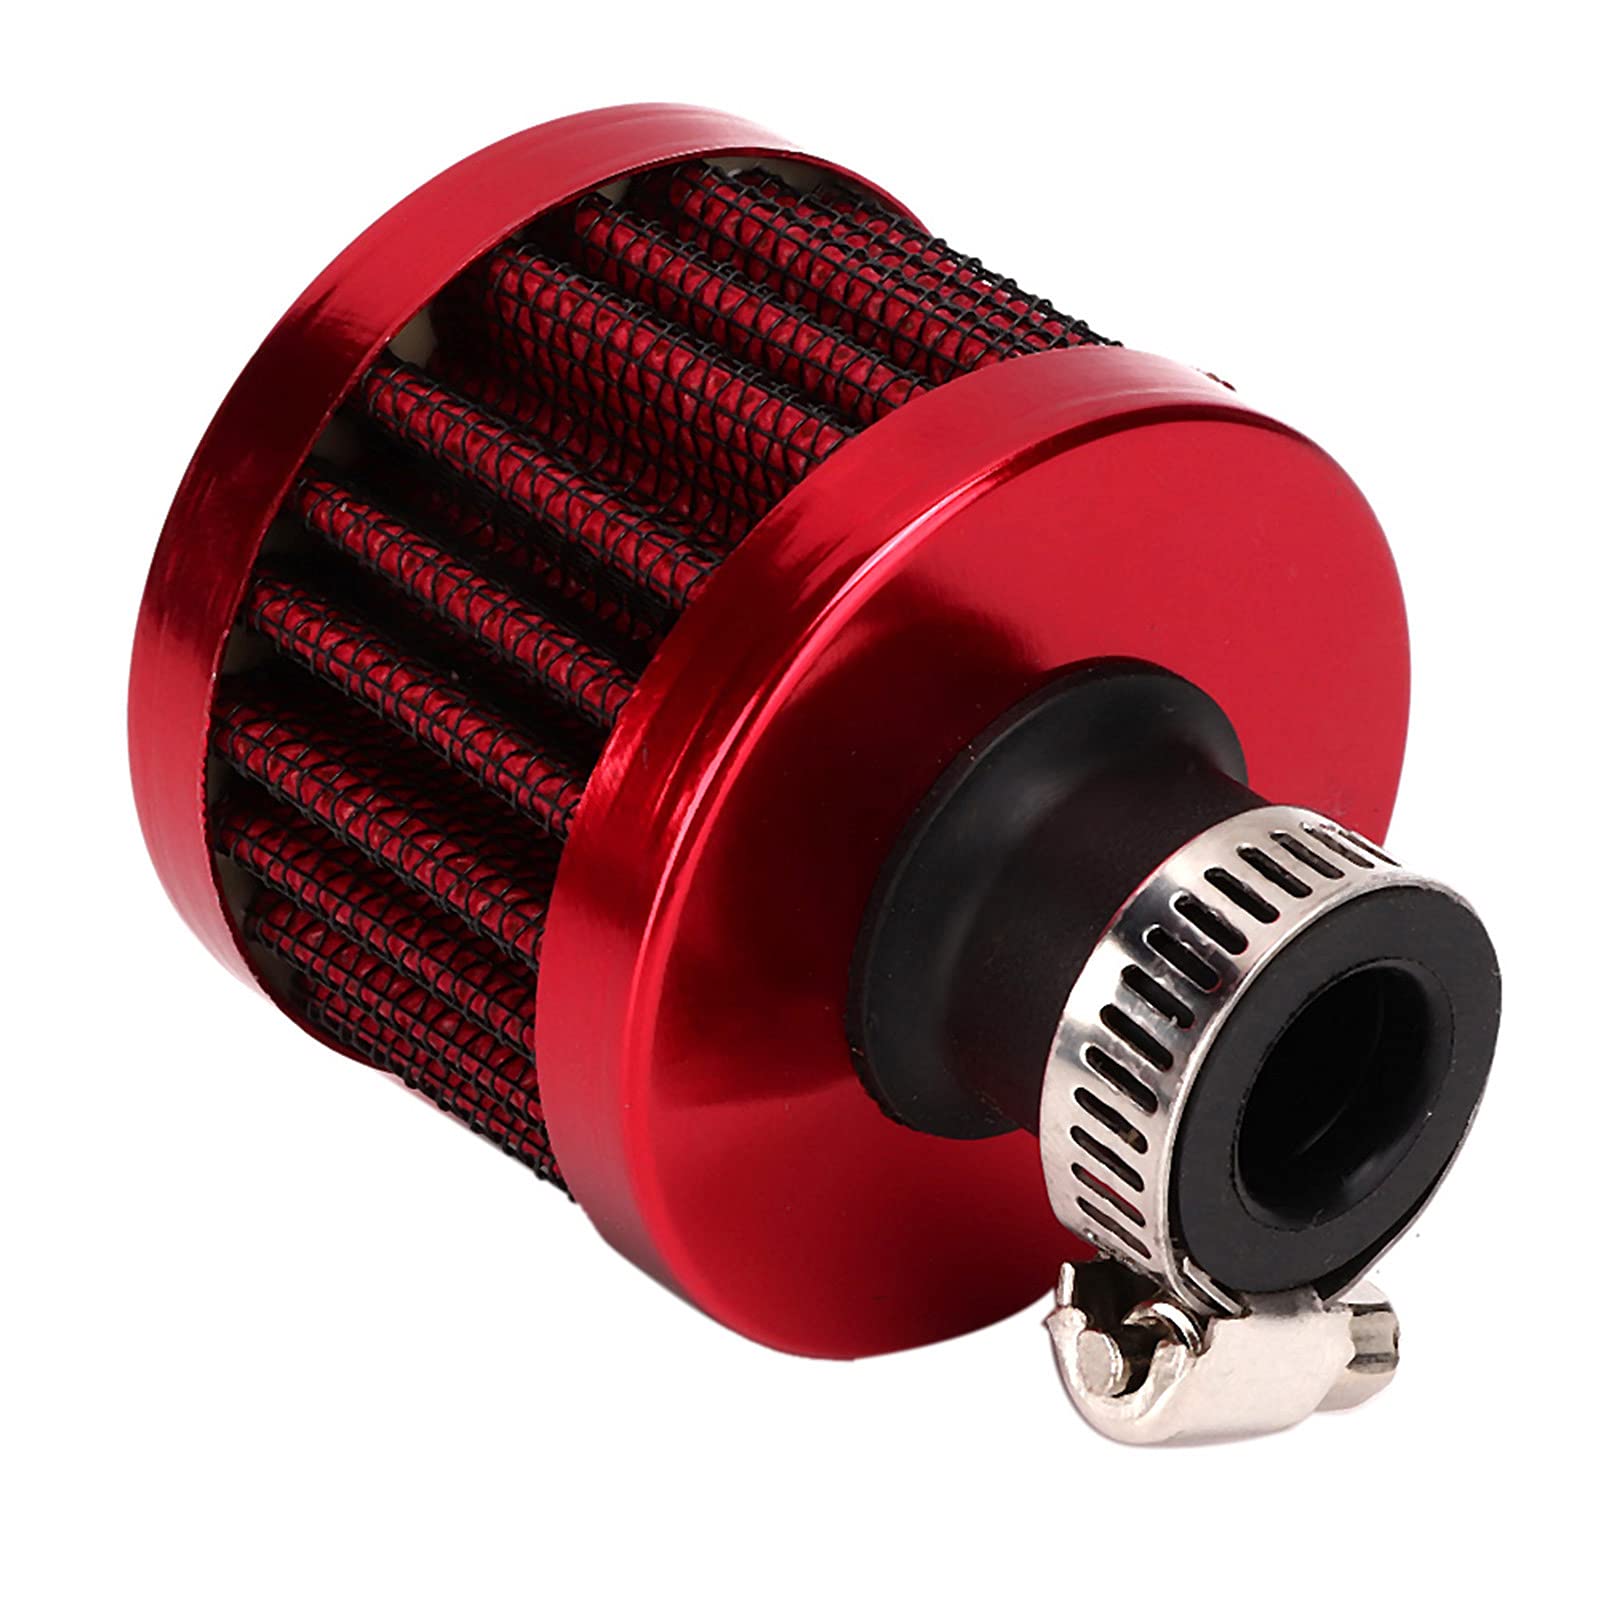 Vent Kurbelgehäuseentlüftung, Yosoo 13mm/0.5in Mini Air Intake Filter Vent Kurbelgehäuseentlüftung Universal Autozubehör (Noire)(rot) von Yosoo